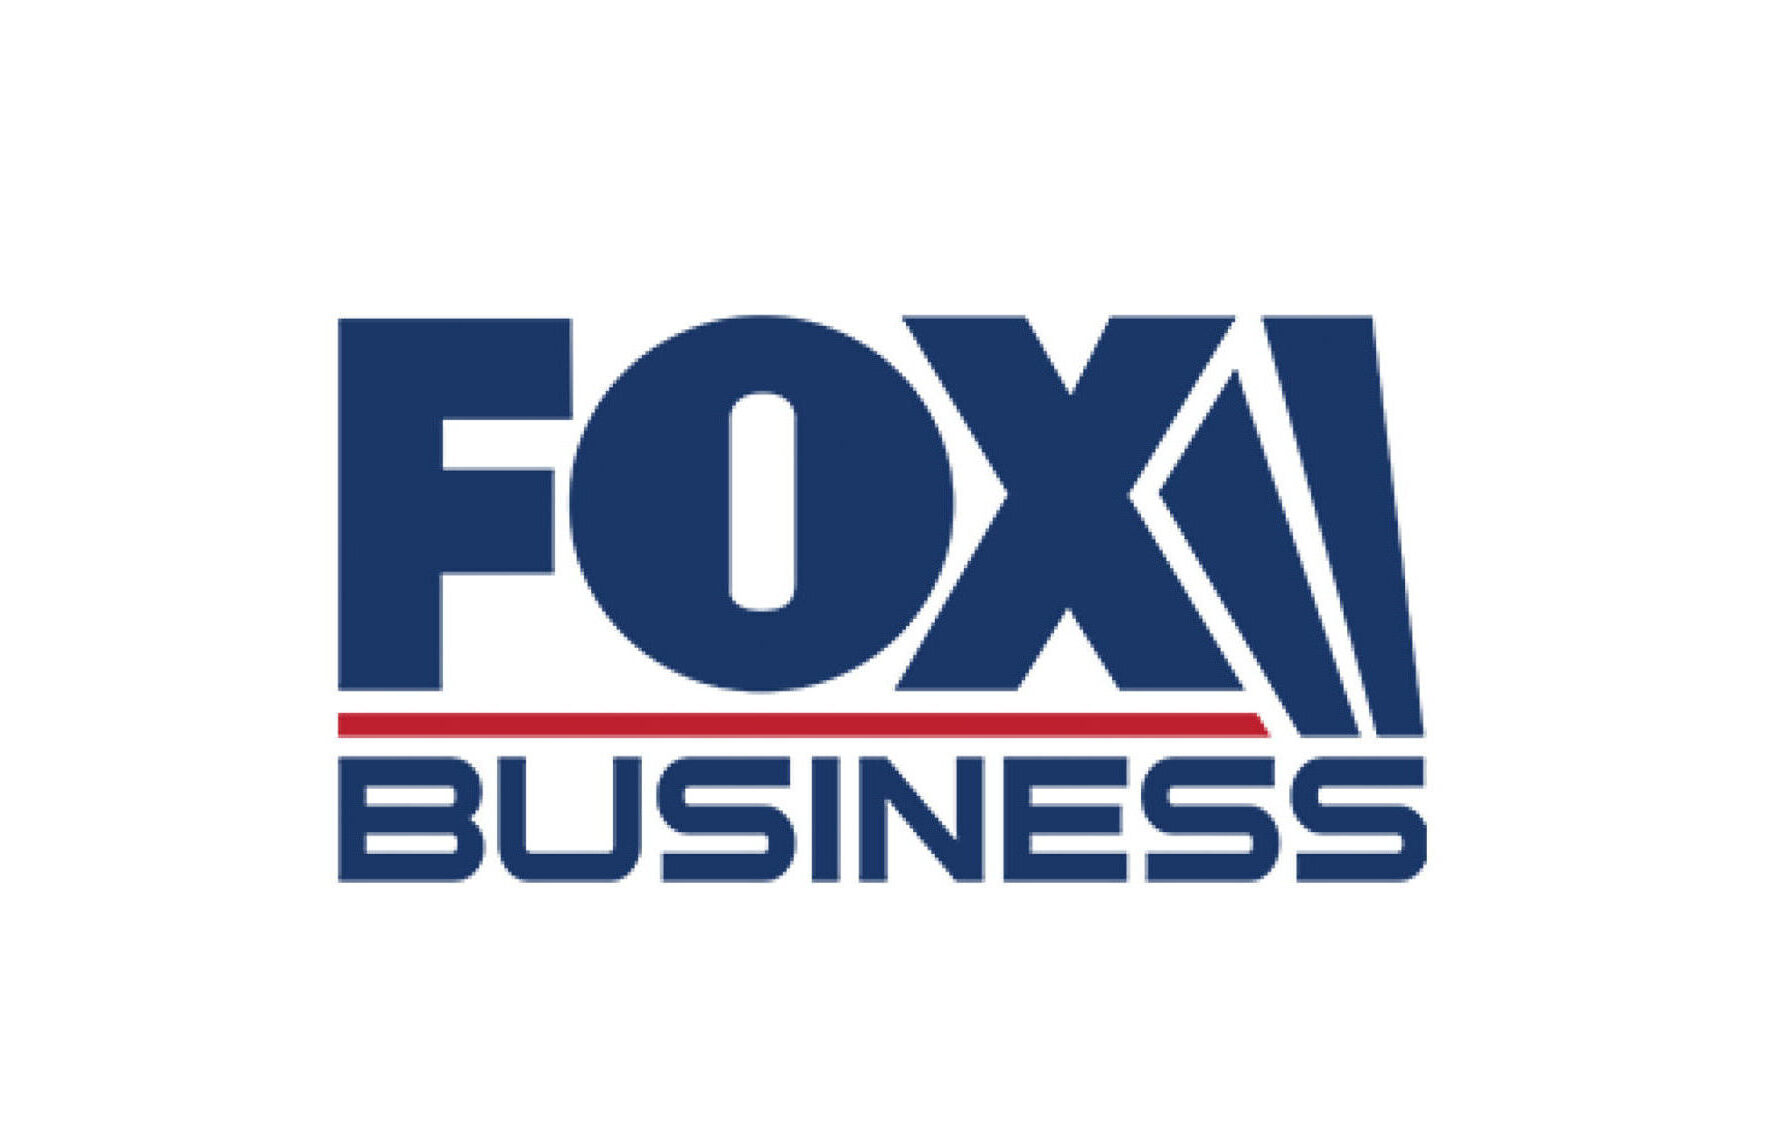 Fox Business News